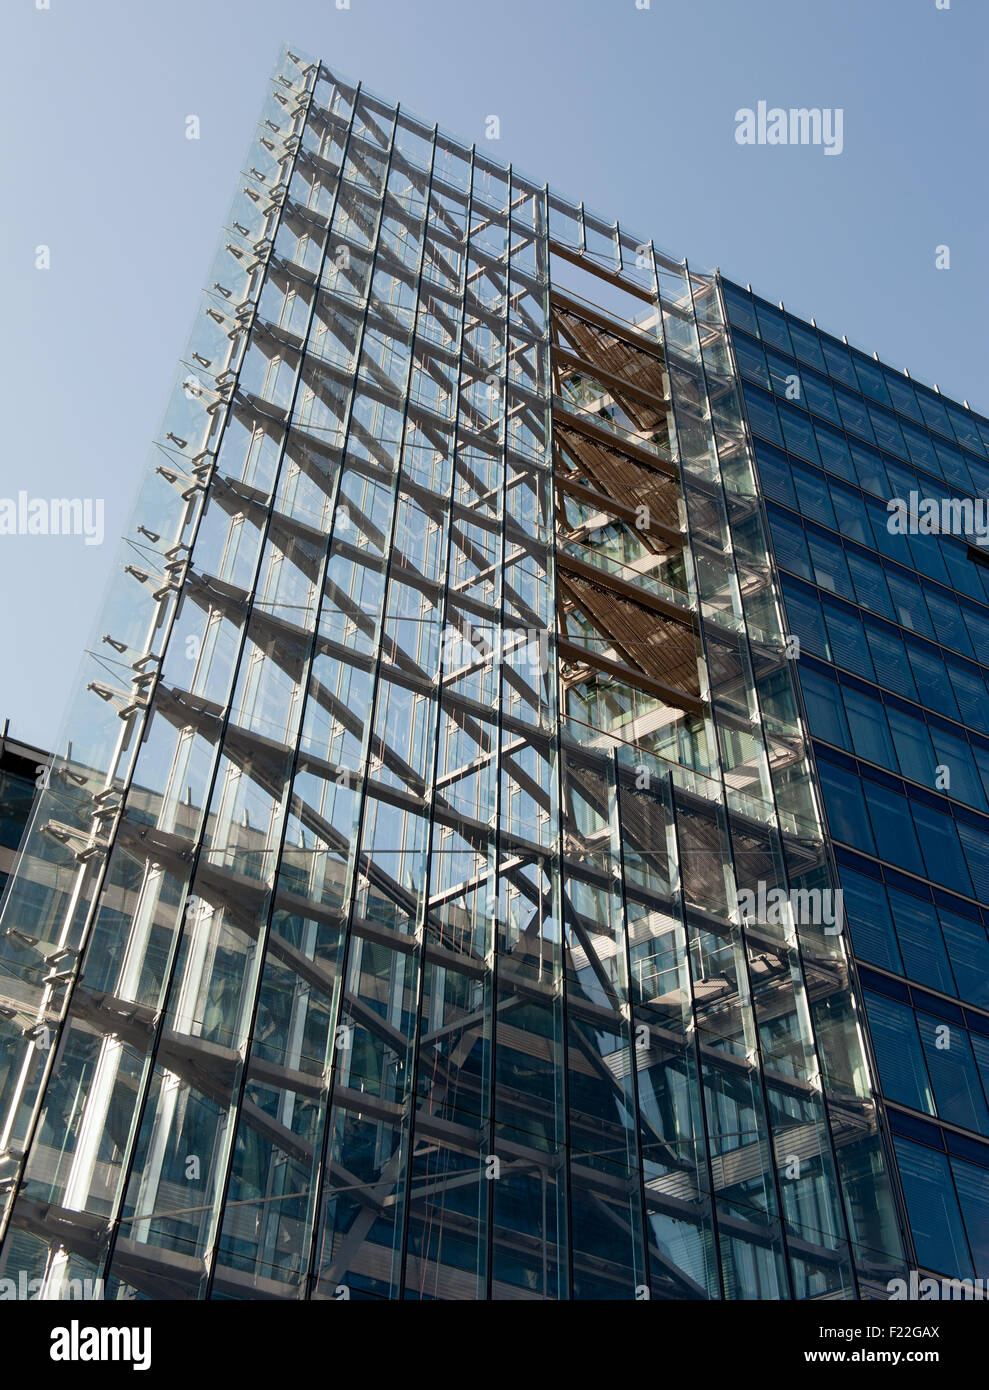 Modernes Hochhaus aus Stahl und Glas Stock Photo